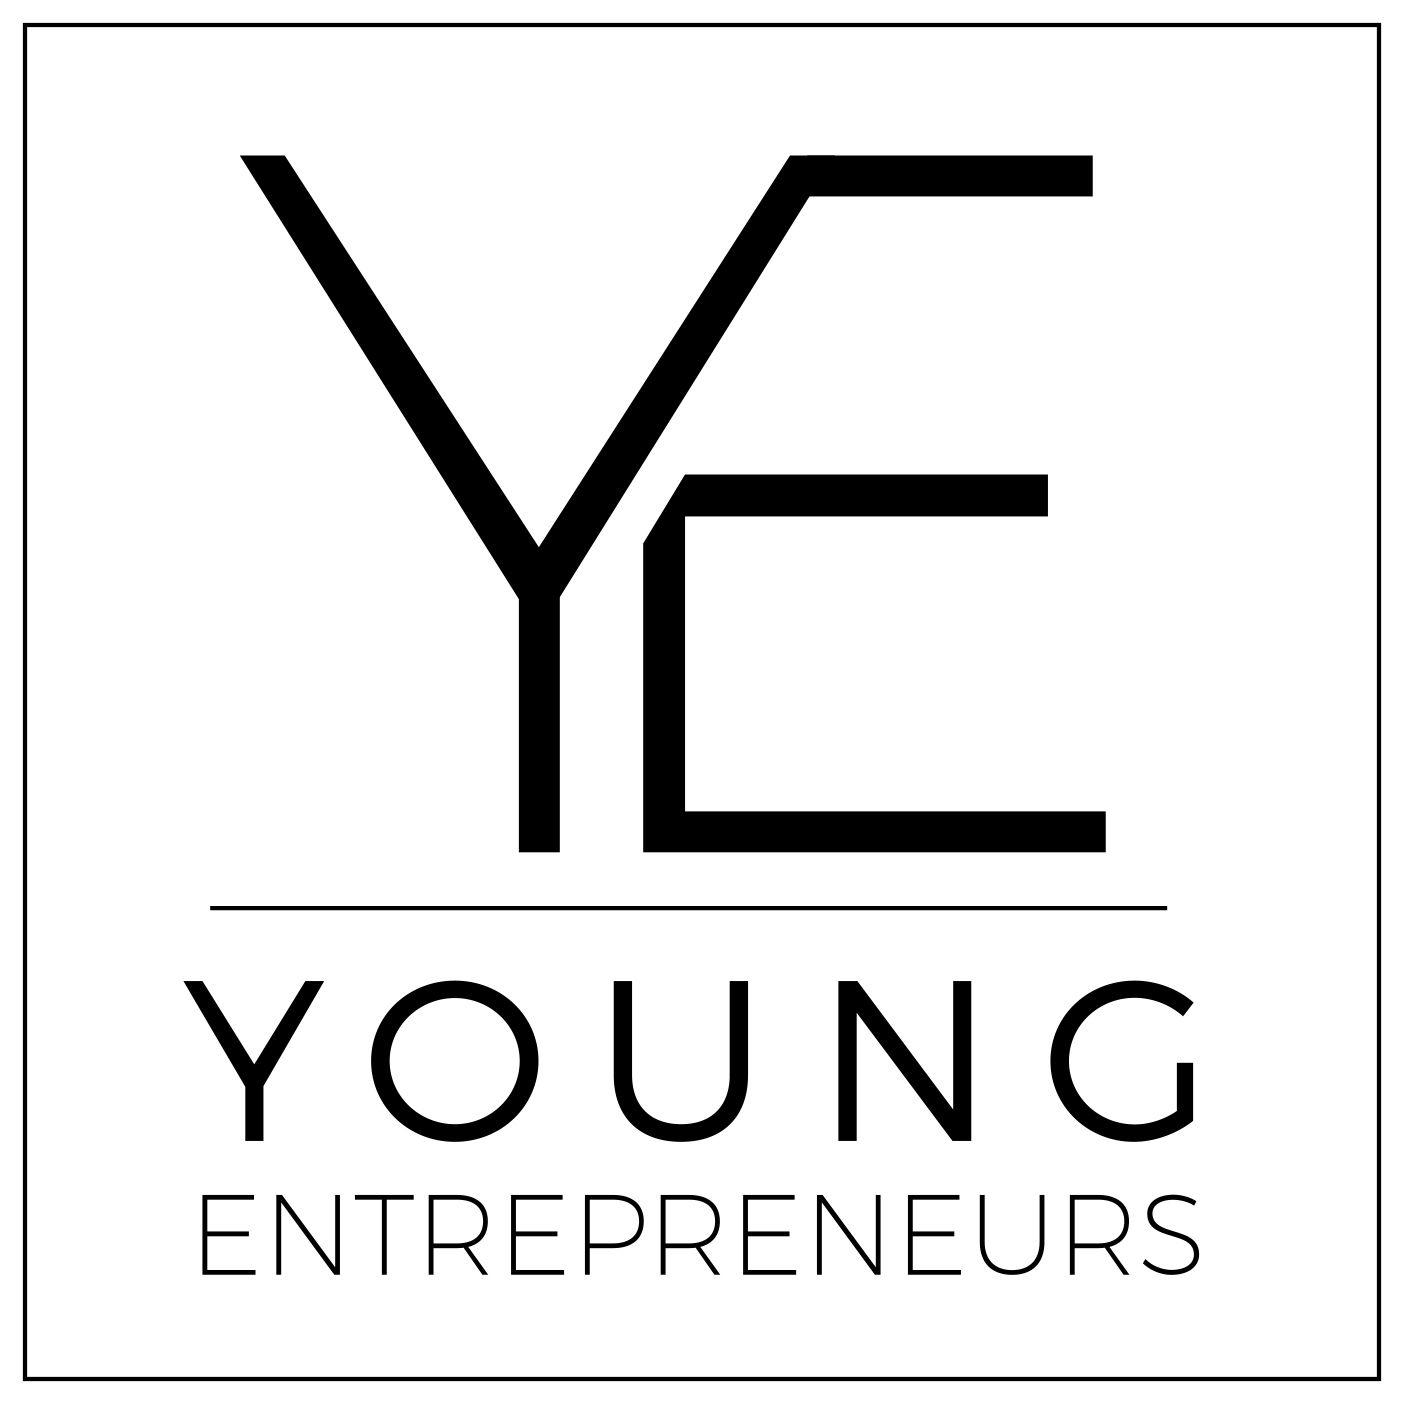 Entreprenuer Logo - Young Entrepreneur Logo - Waikato Business News